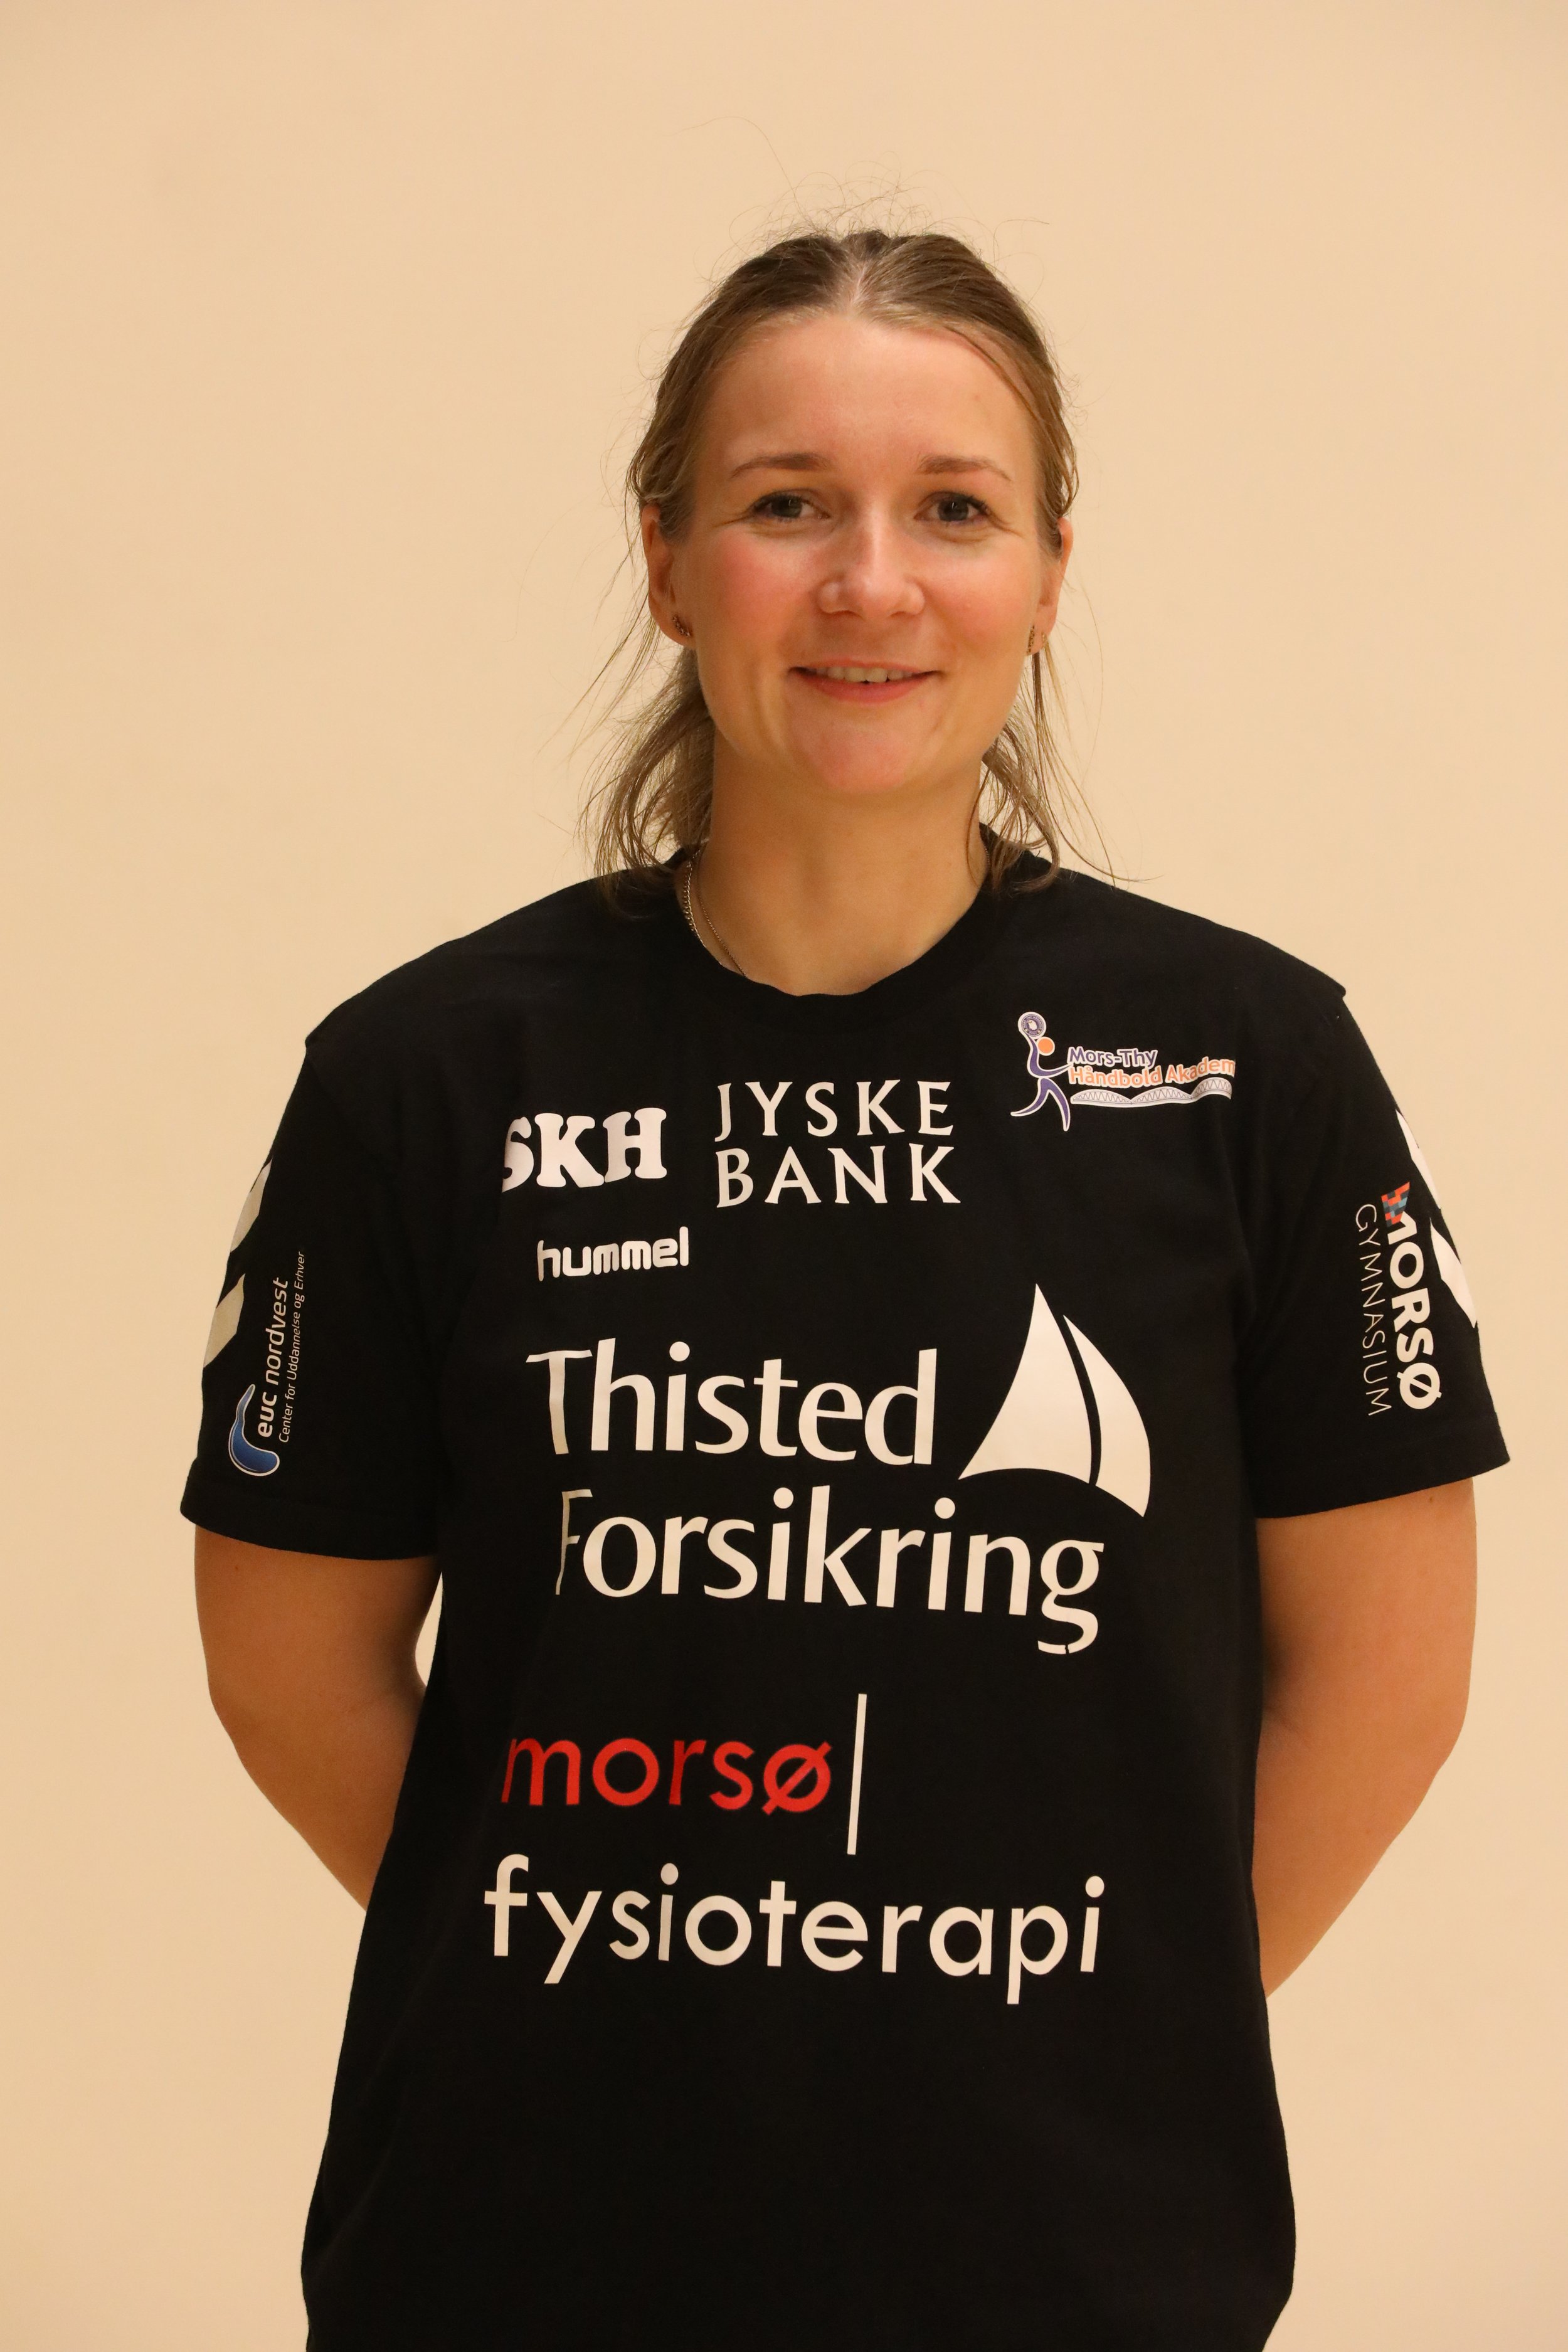 Sara Kankelborg Poulsen